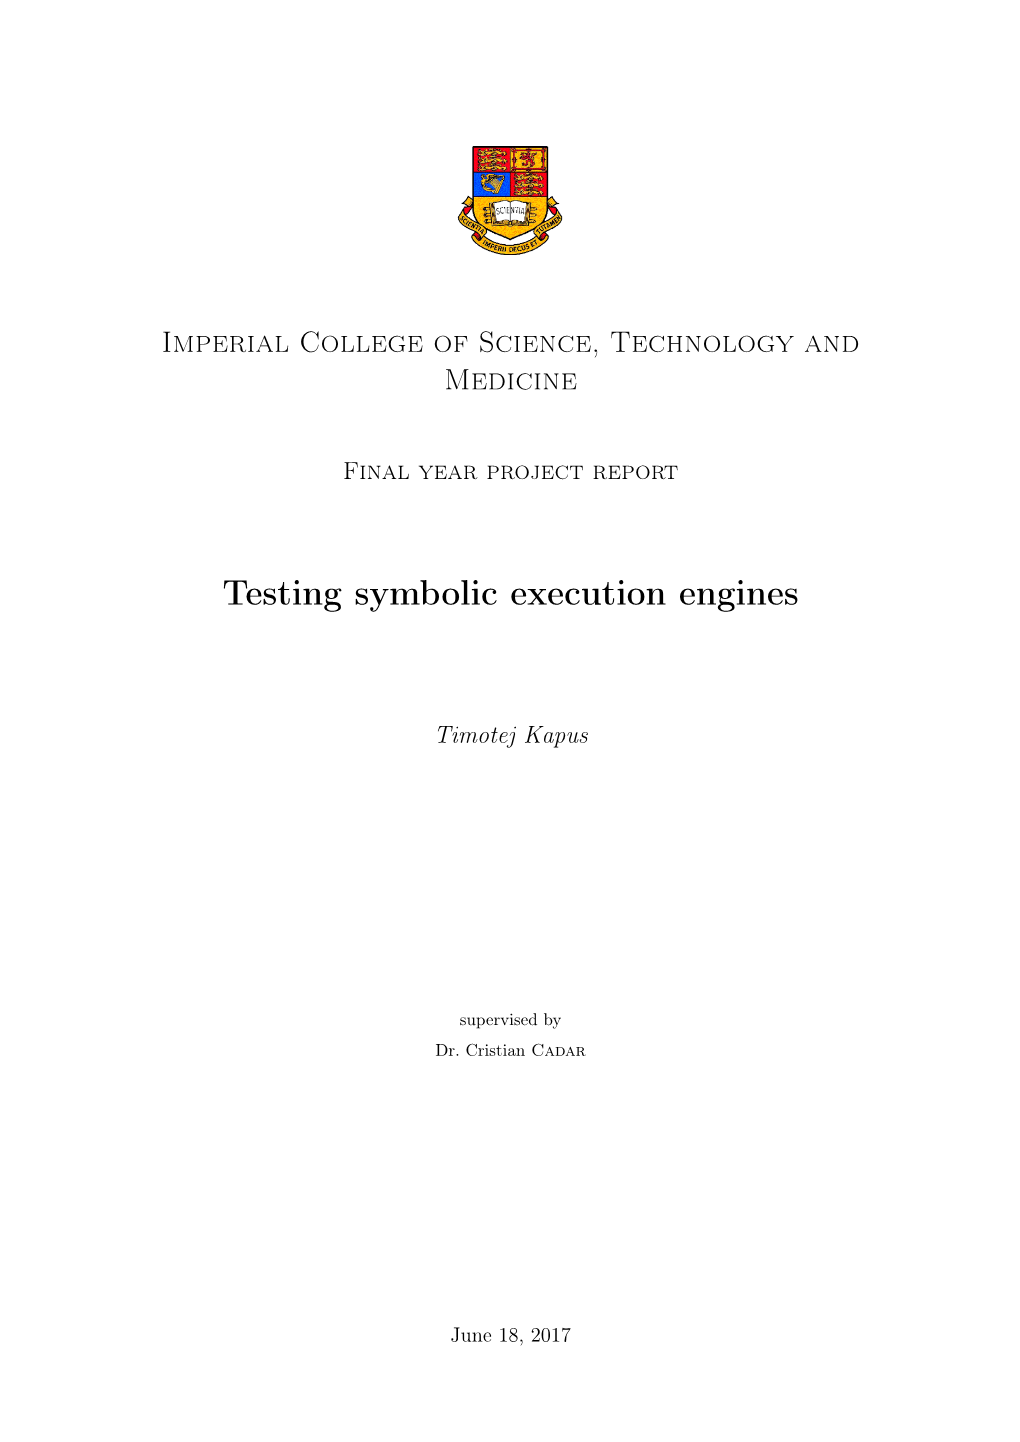 Testing Symbolic Execution Engines